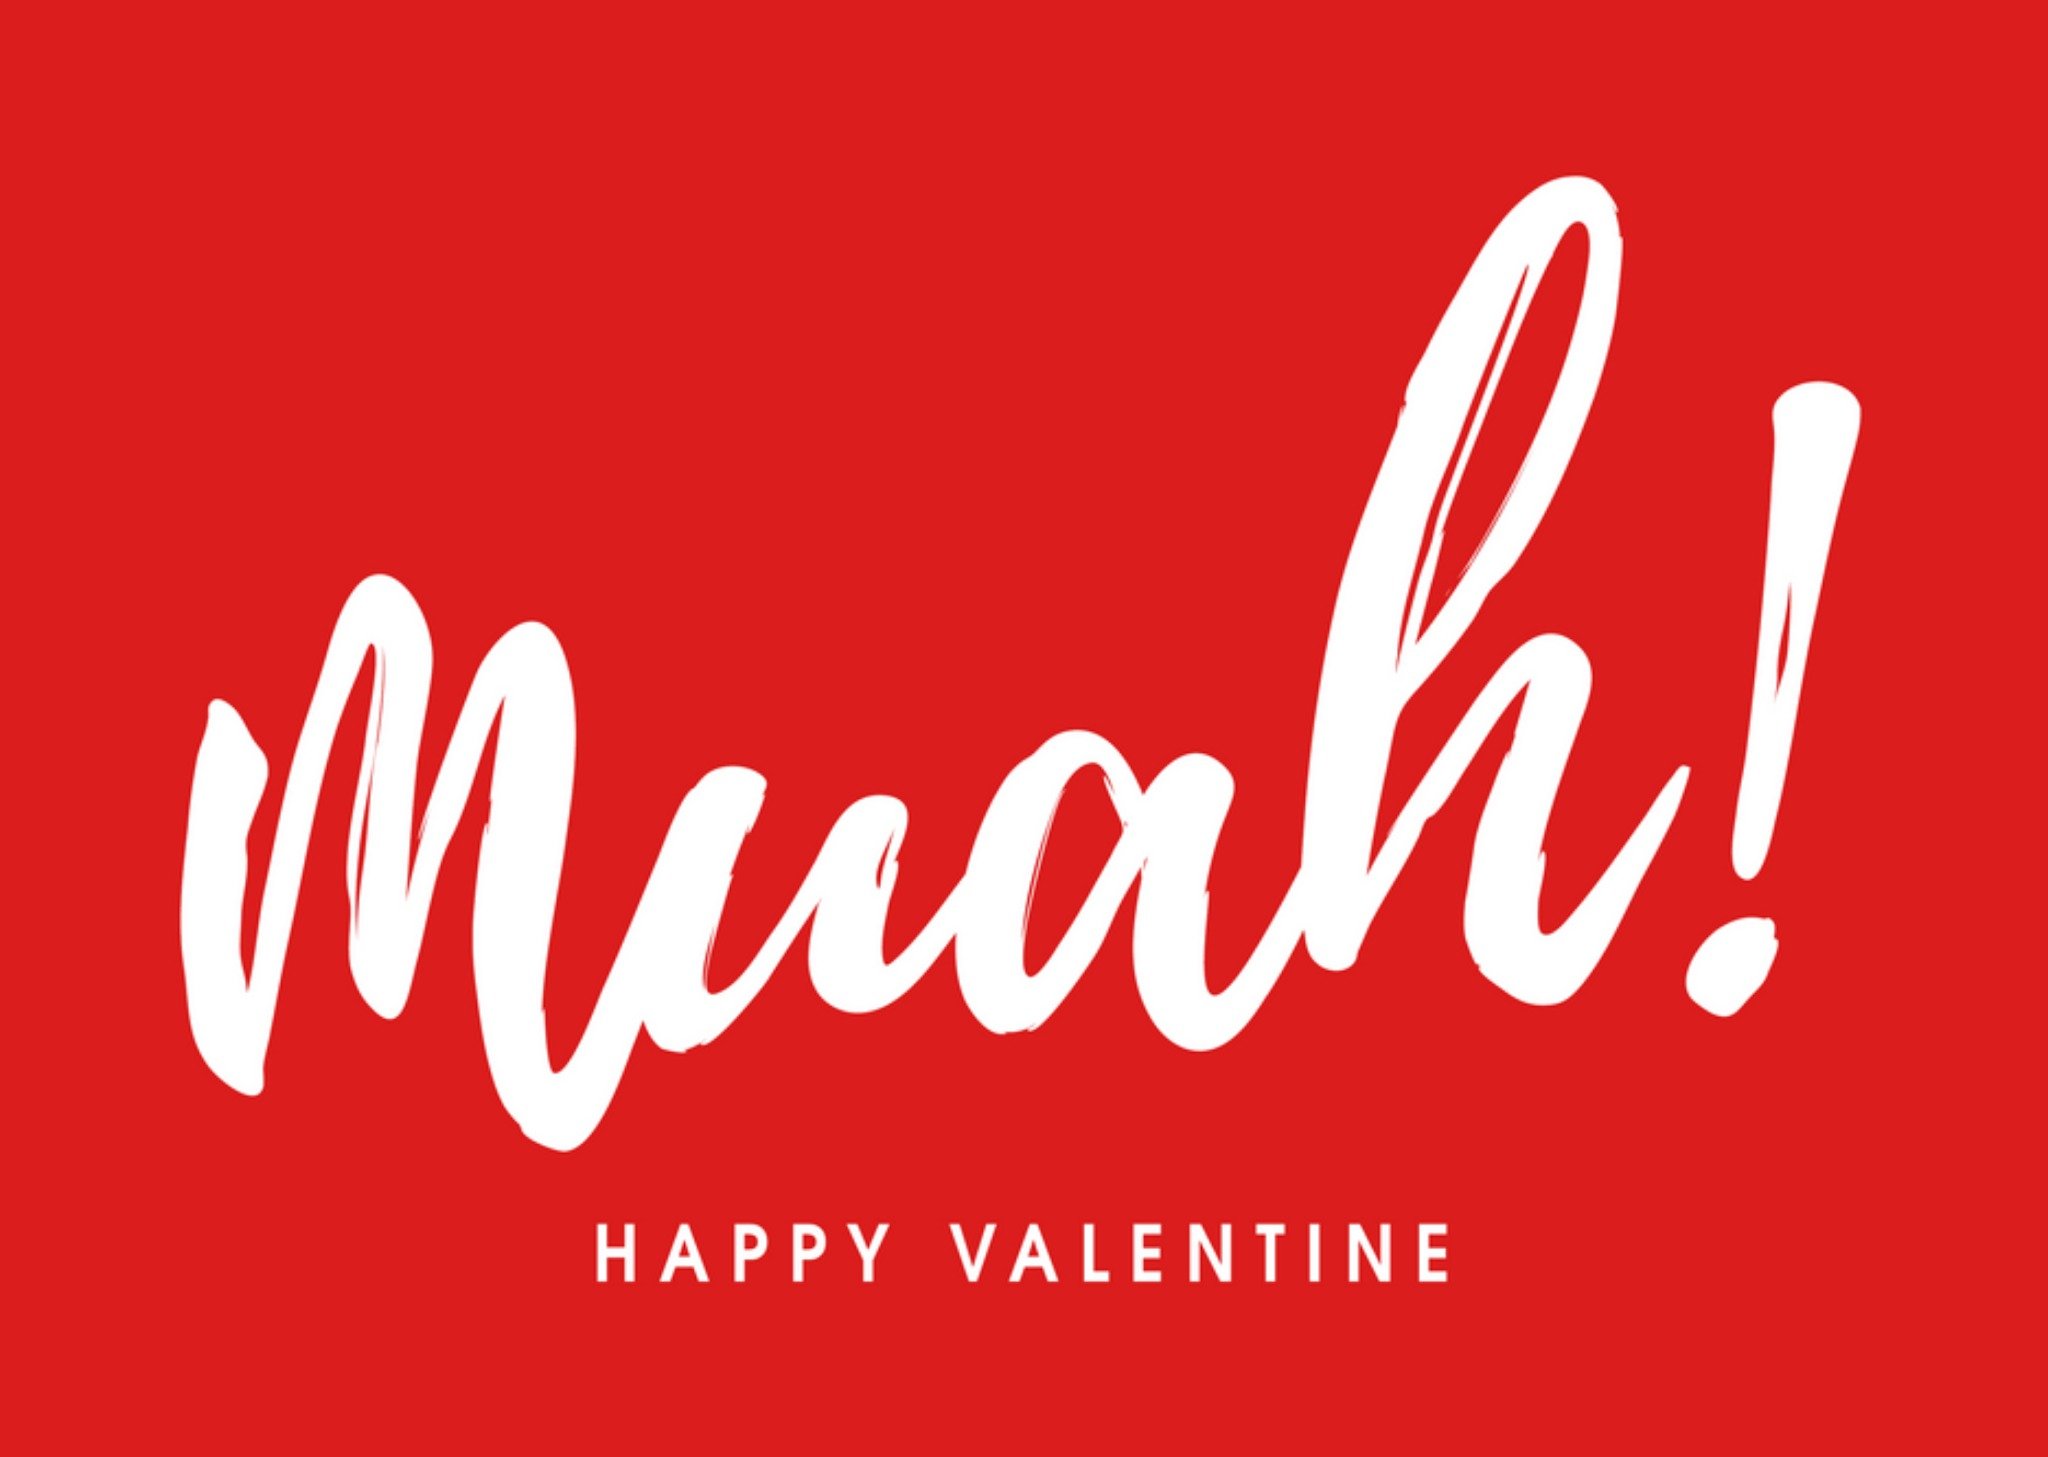 Luckz - Valentijnskaart - Mwah - Happy Valentine